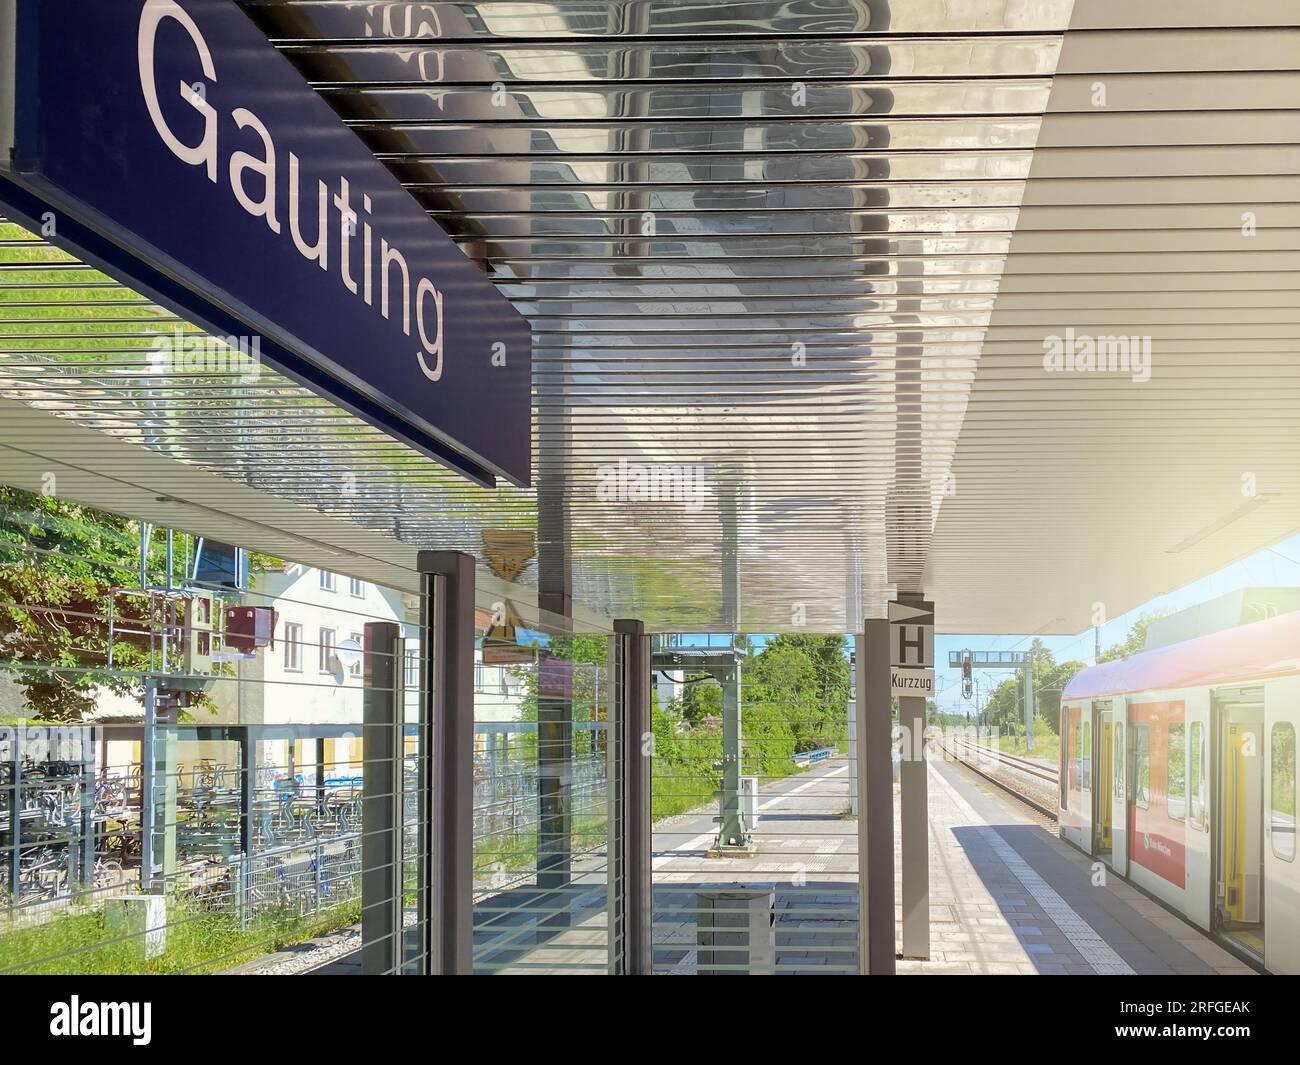 Gauting, DE, 22 de mayo de 2022: Plataforma de la estación de tren de Gauting, con un tren en el fondo Foto de stock